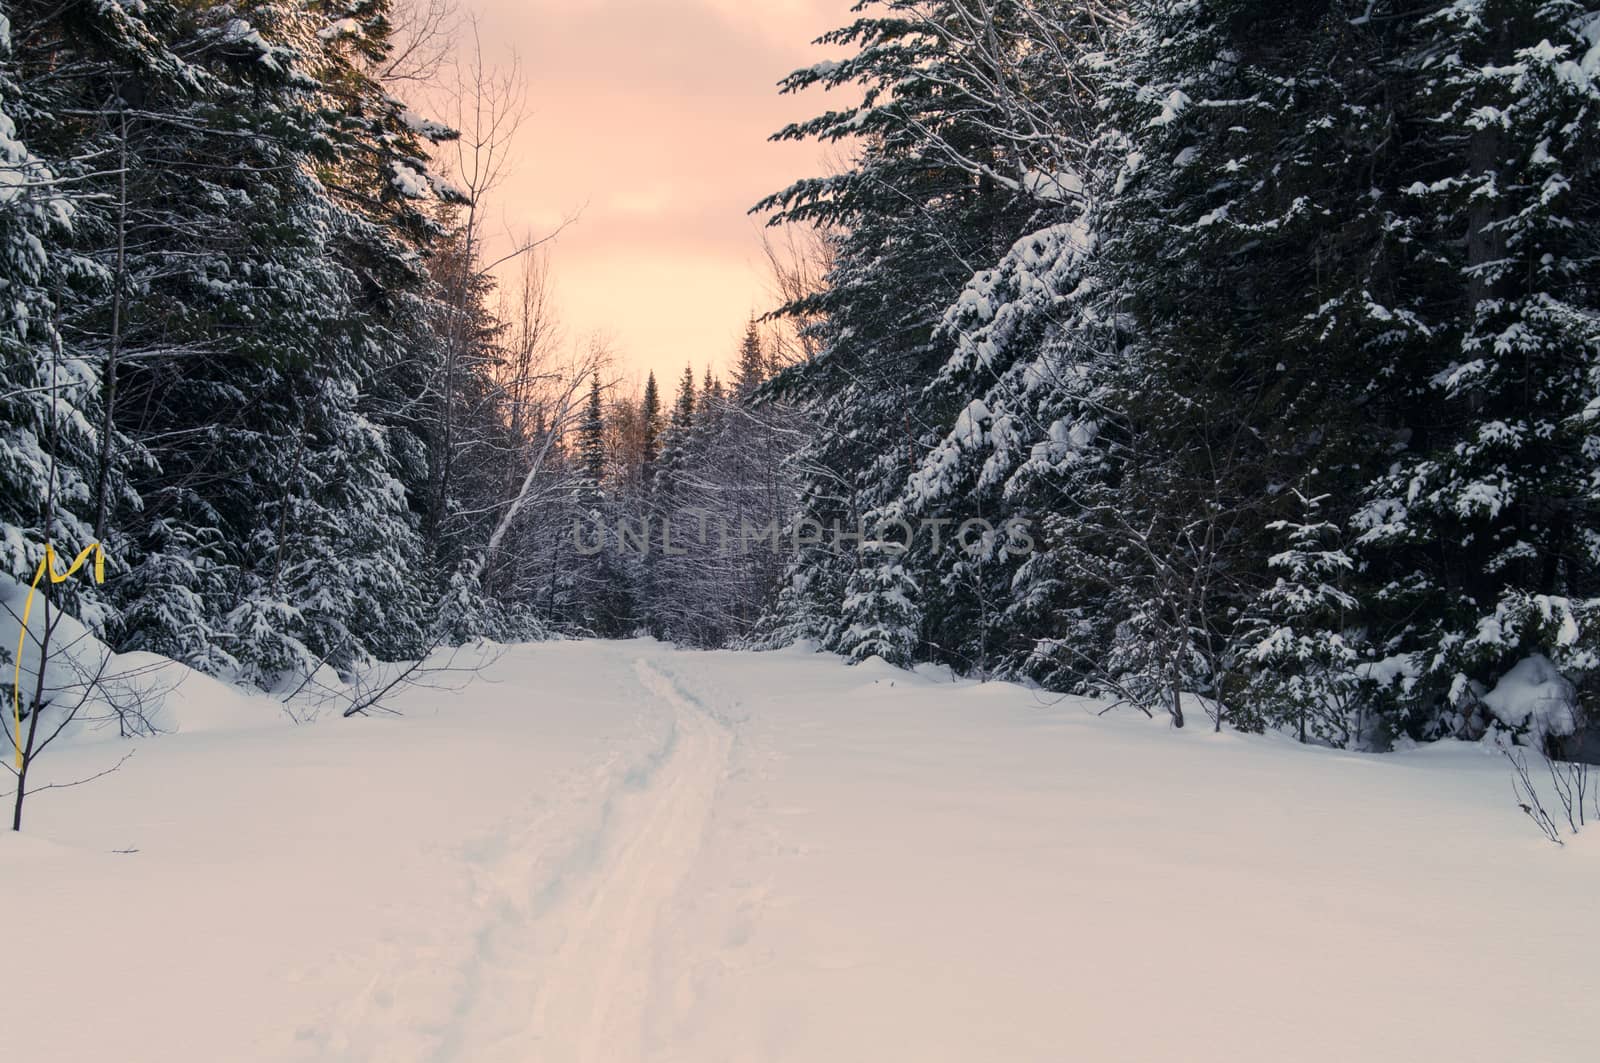 Snowshoe trail by edcorey